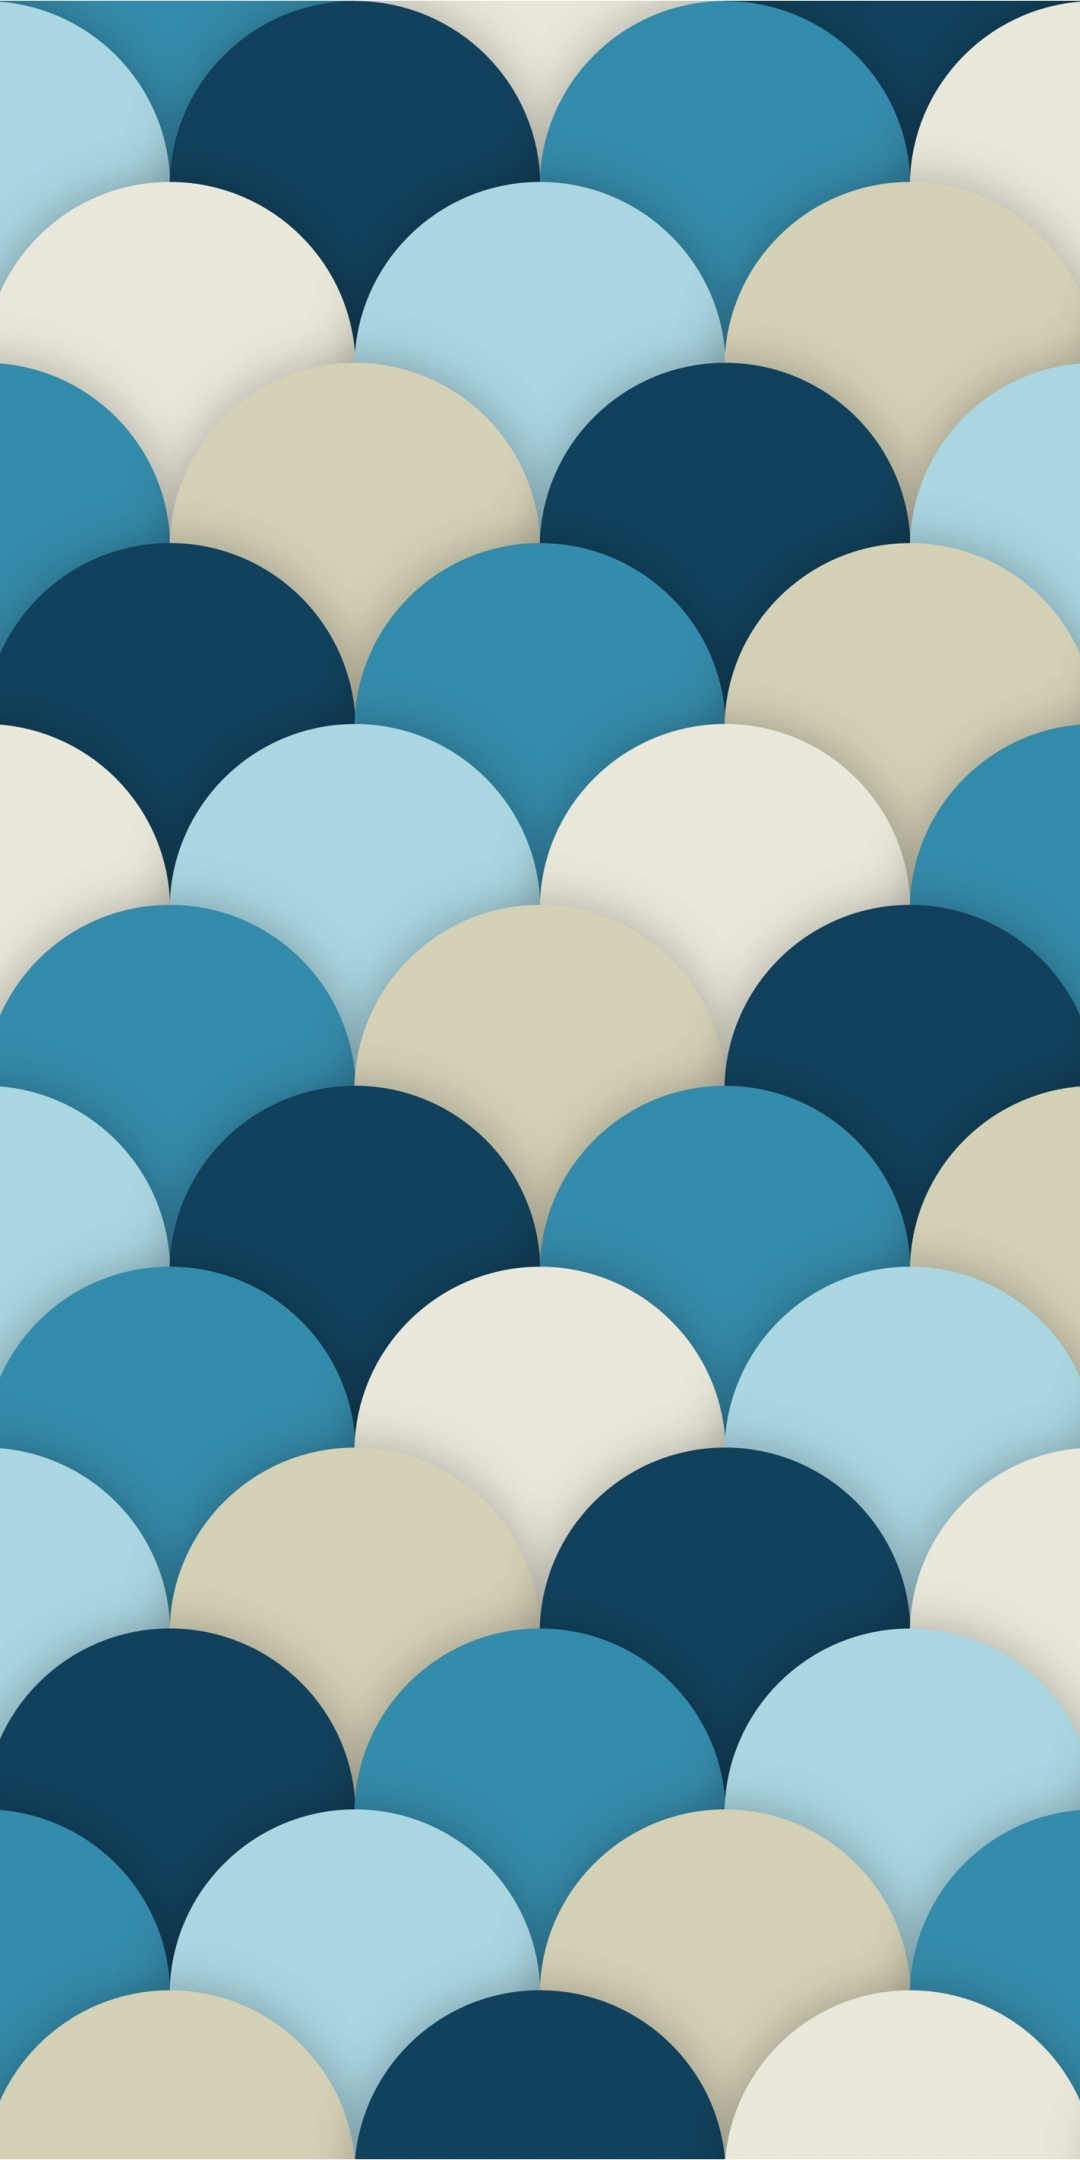 Pattern, abstract, circles, 1080x2160 wallpaper